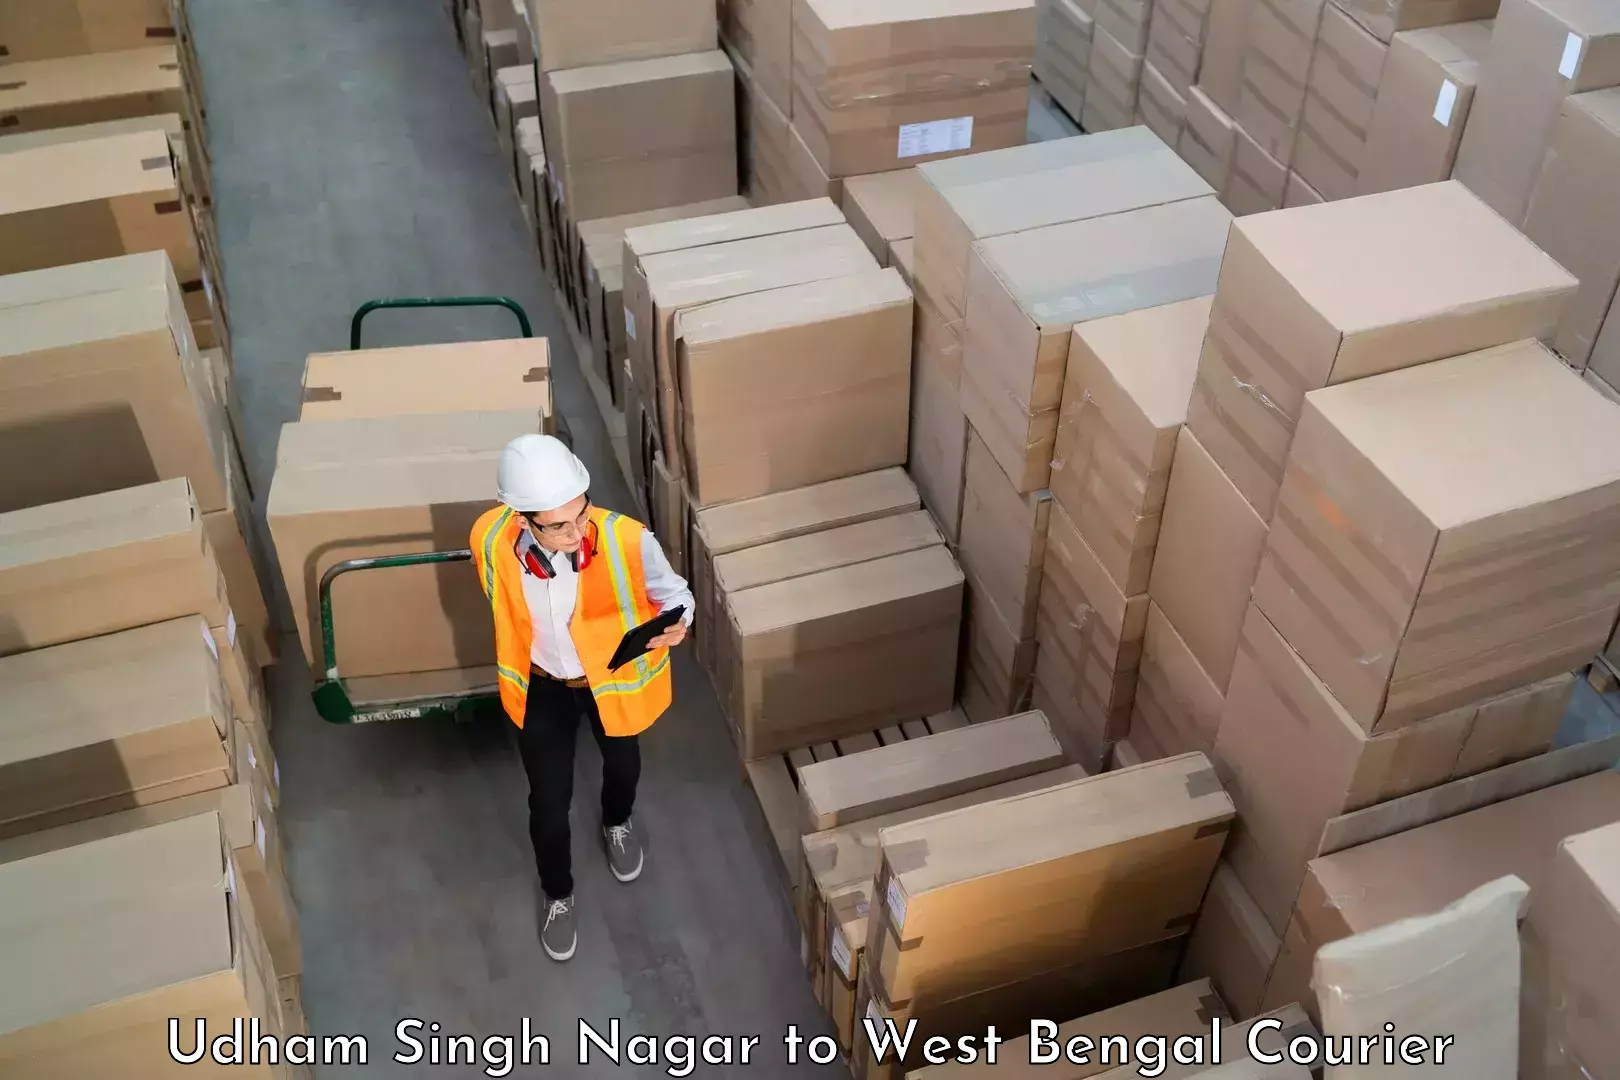 Baggage shipping service Udham Singh Nagar to Maynaguri